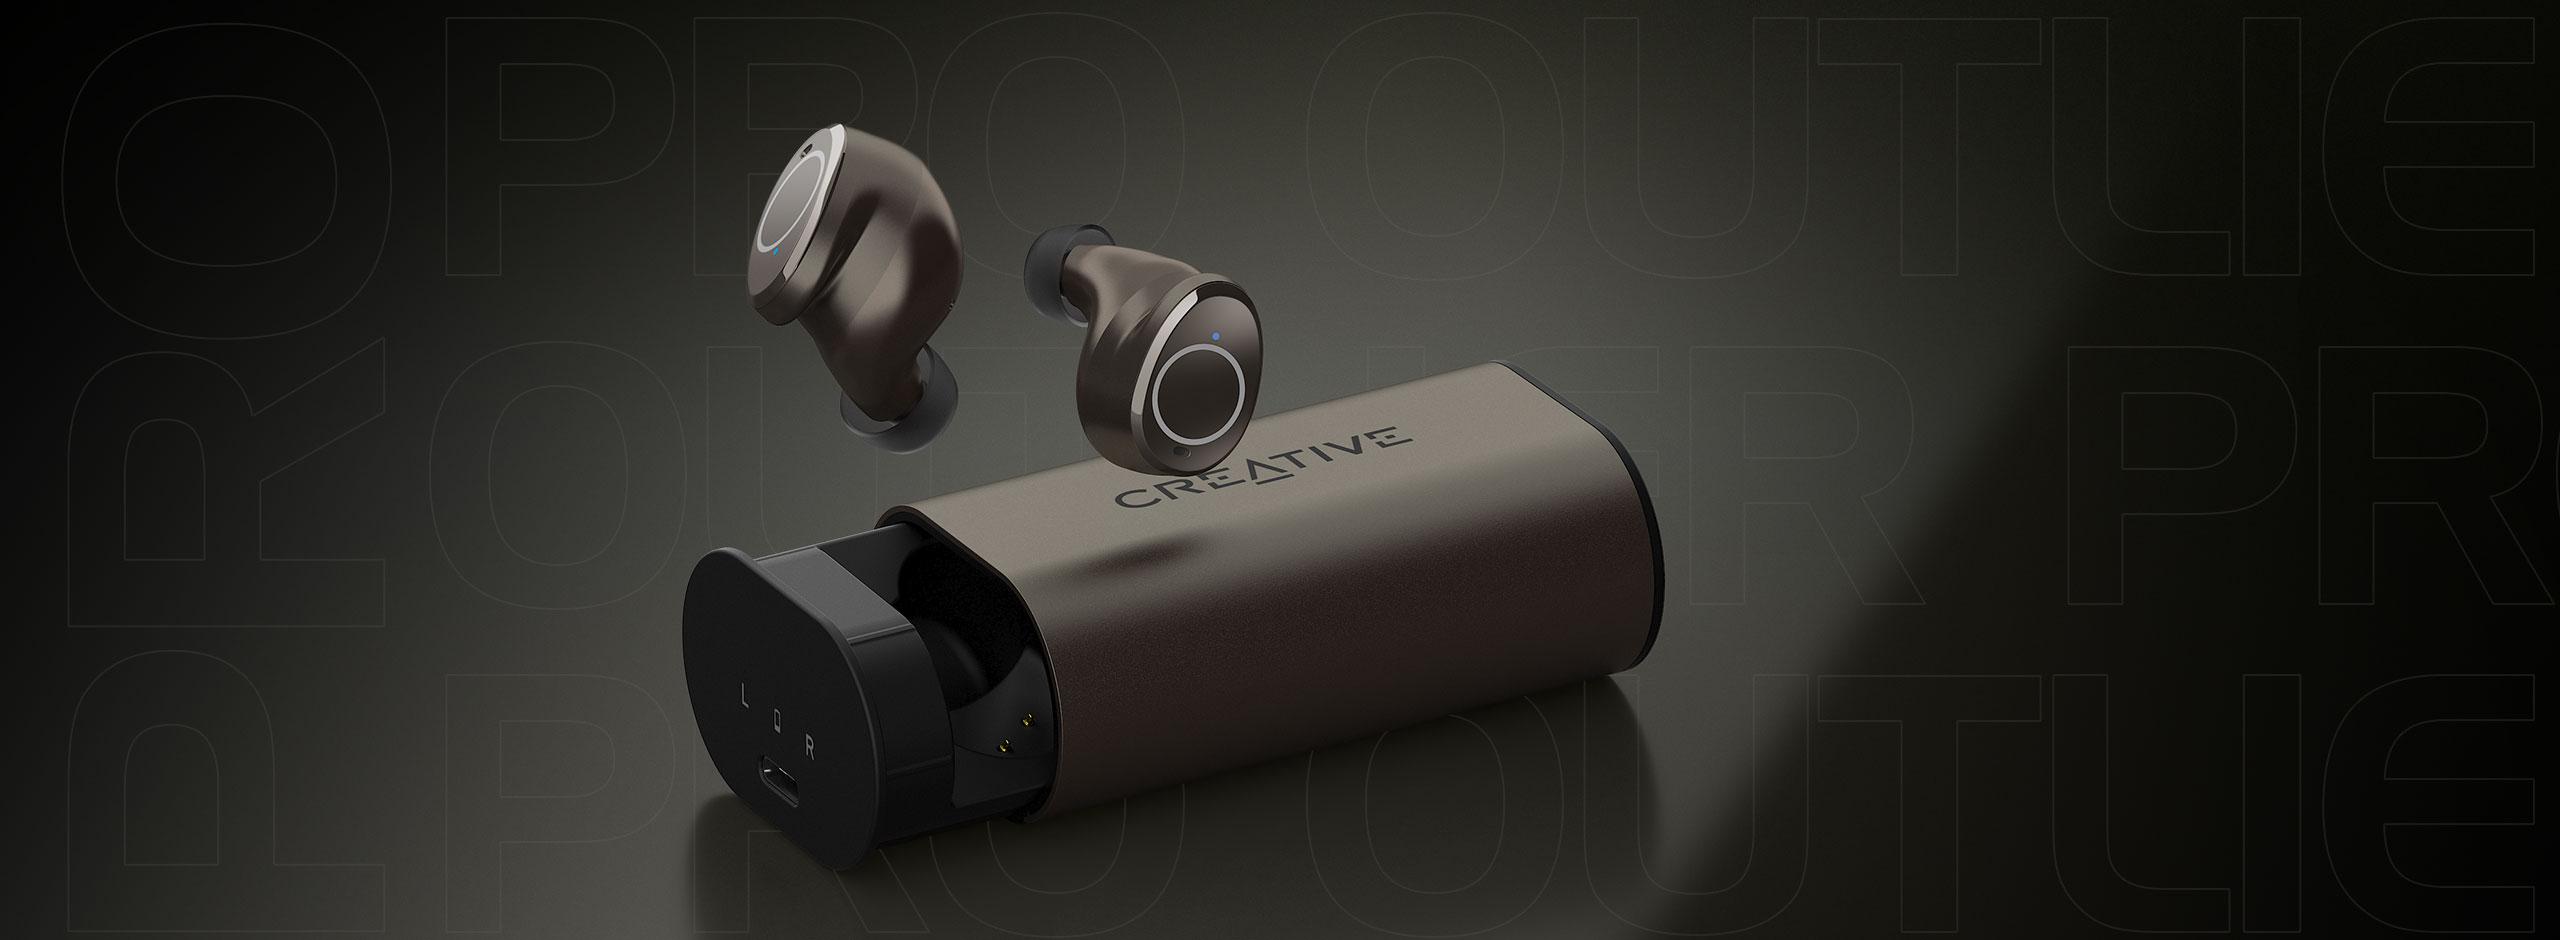 Słuchawki bezprzewodowe douszne IPX5 BT 5.2 Creative Outlier Pro - innowacyjny design, najnowsze technologie